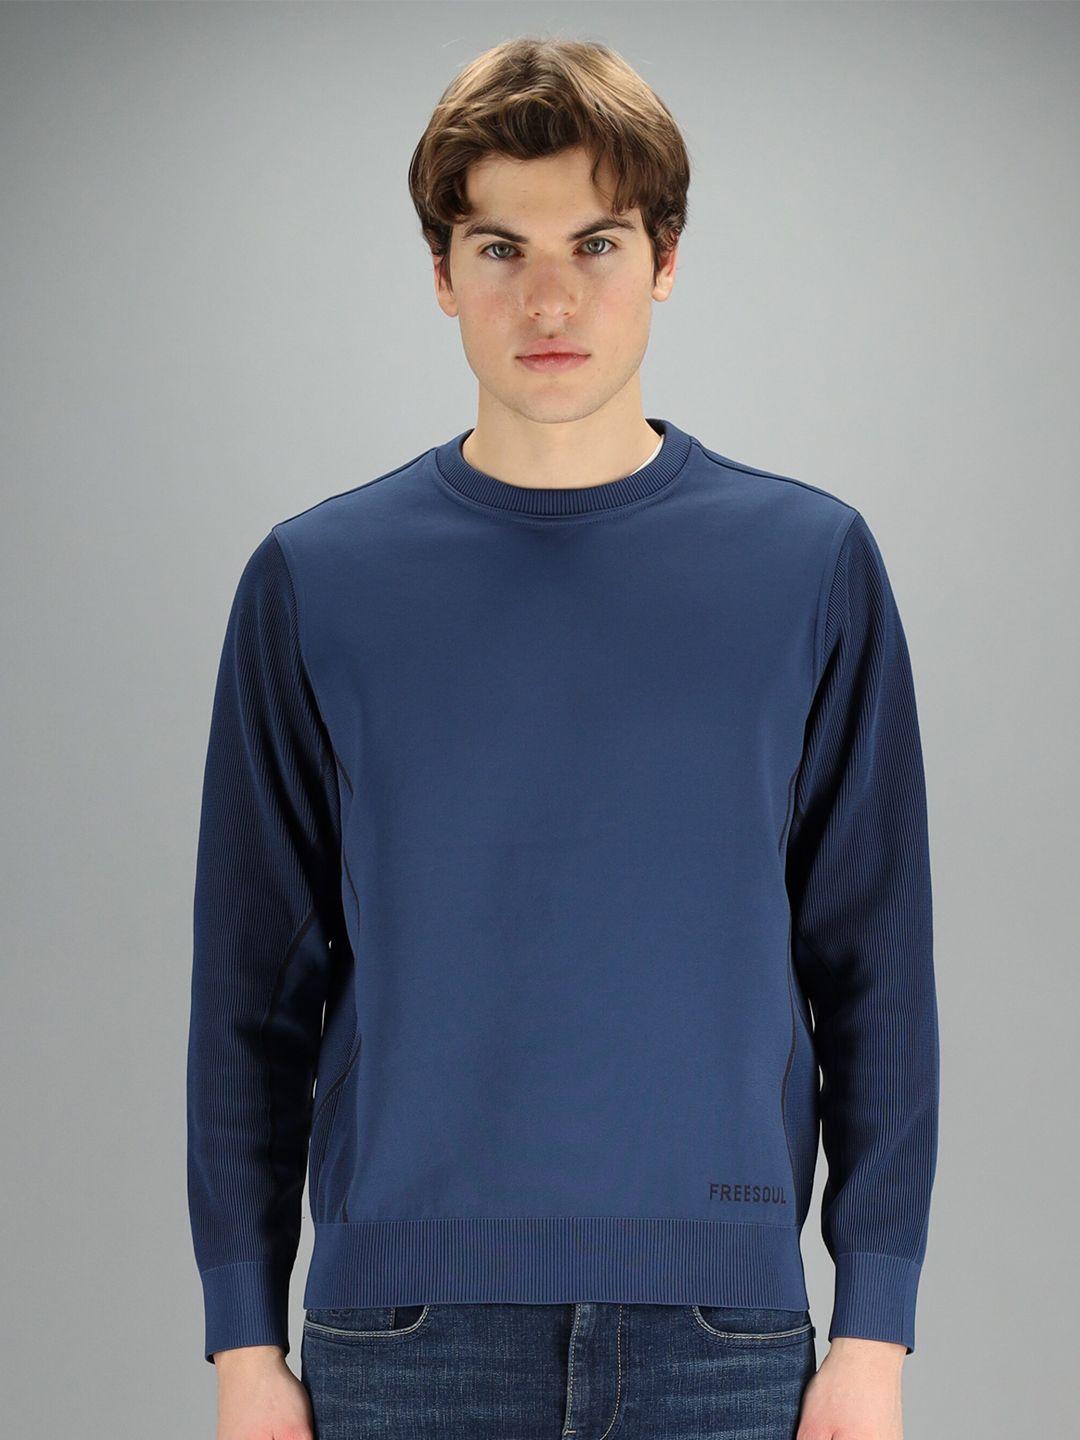 freesoul men blue sweatshirt